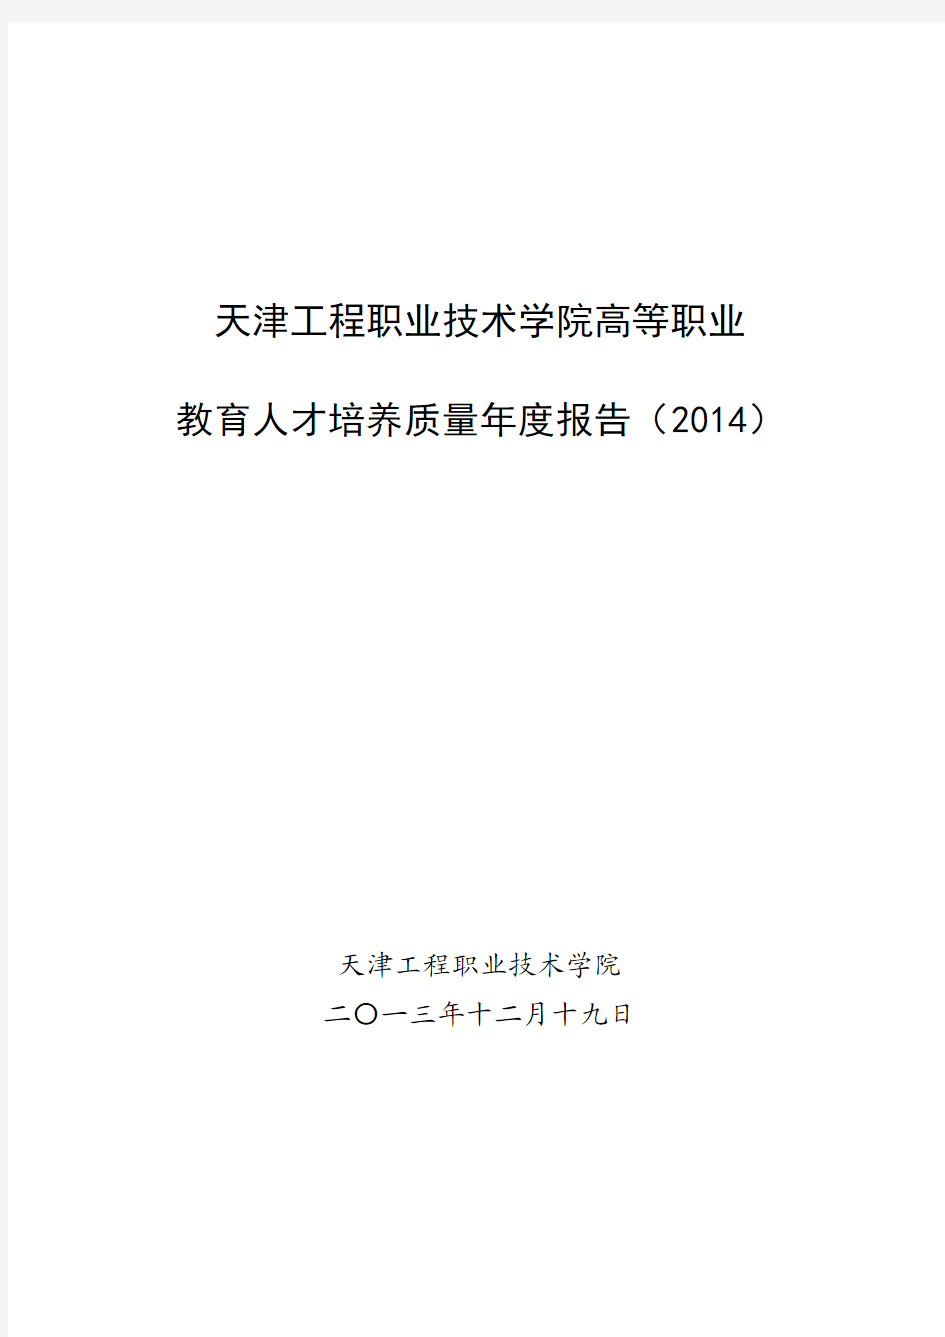 天津工程职业技术学院高等职业教育人才培养质量年度报告(2014)